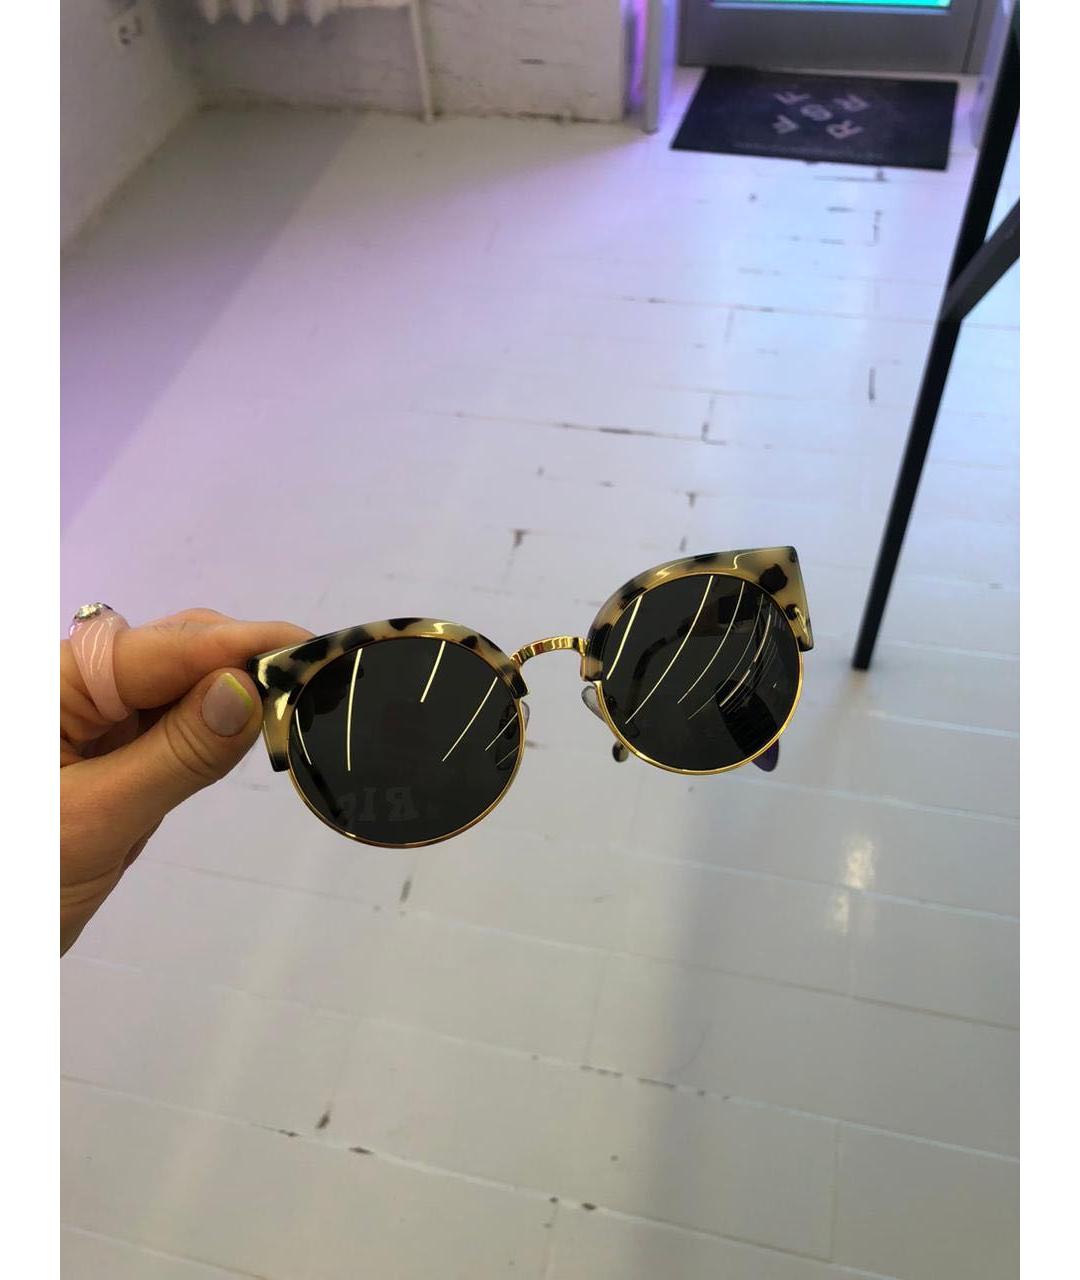 RETROSUPERFUTURE Черные пластиковые солнцезащитные очки, фото 6